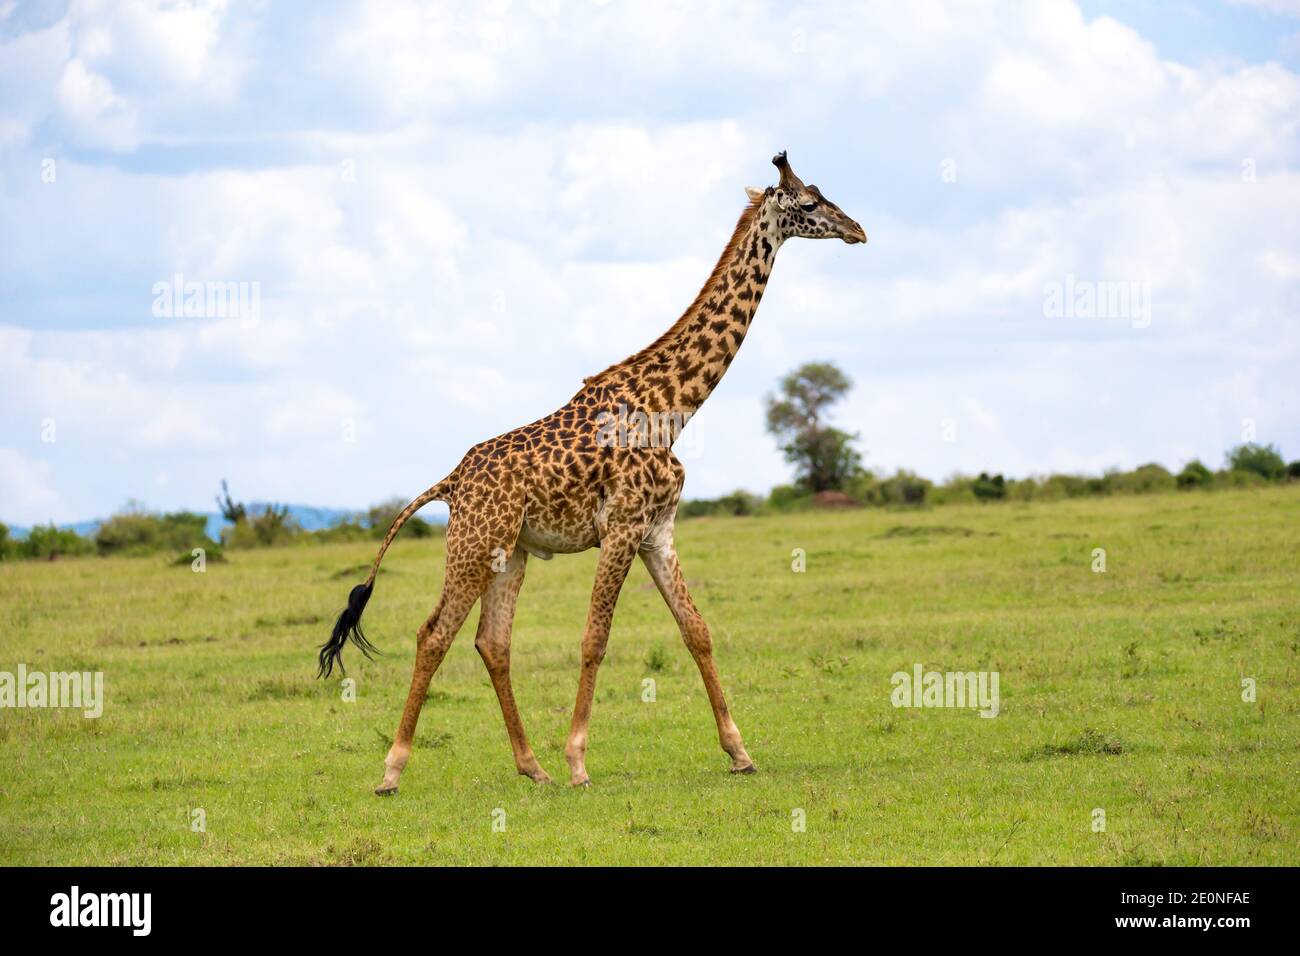 A giraffes run through the grass landscape in Kenya. Stock Photo